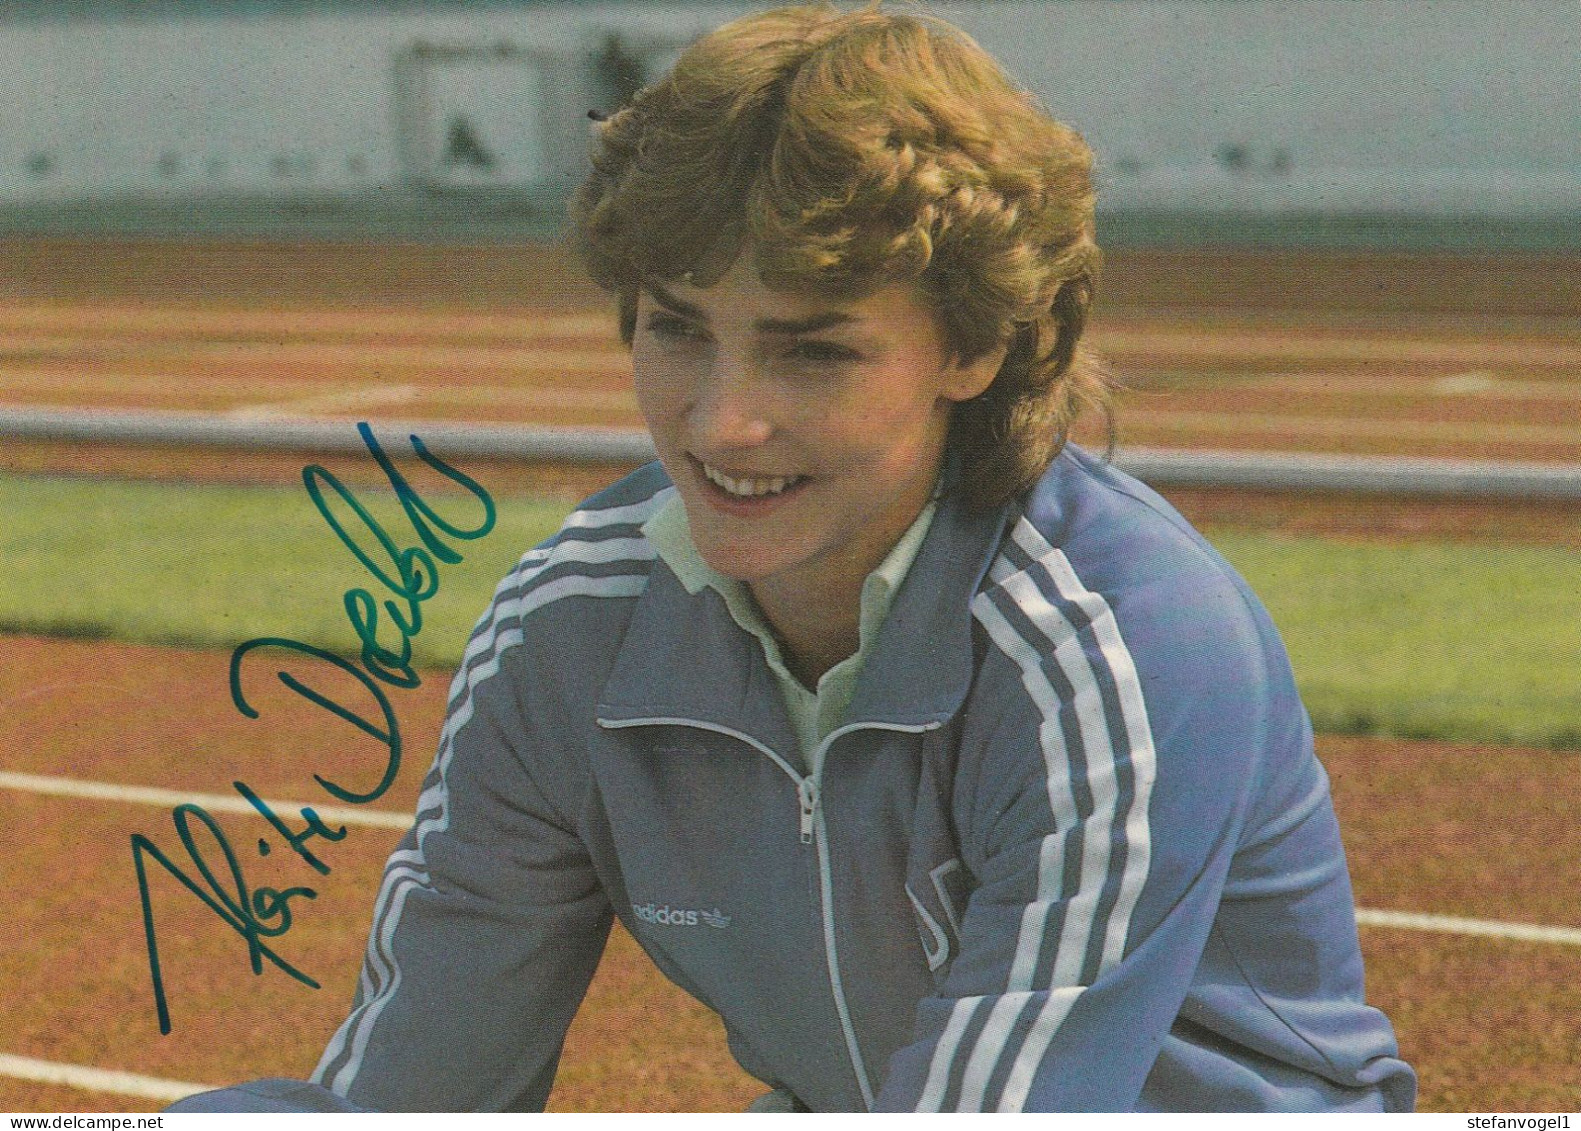 Heike Drechsler Leichtathletik Olympiateilnehmerin 1988, 1992, 2000 - Autographes